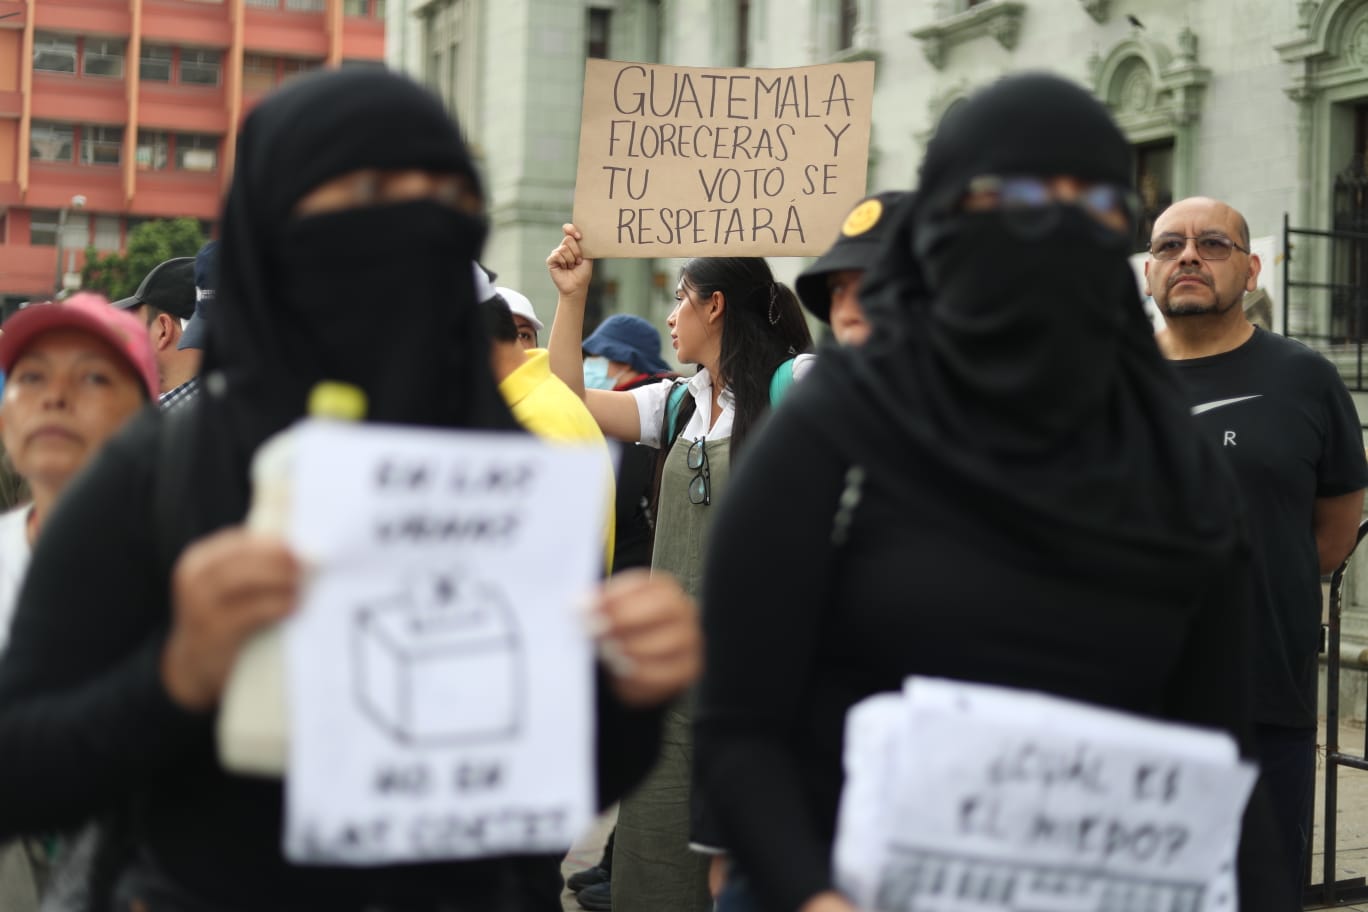 Este sábado 8 de julio se efectúa una marcha en el Centro Histórico en la que estudiantes universitarios manifiestan por la crisis electoral en Guatemala. (Foto Prensa Libre: Esbin García)